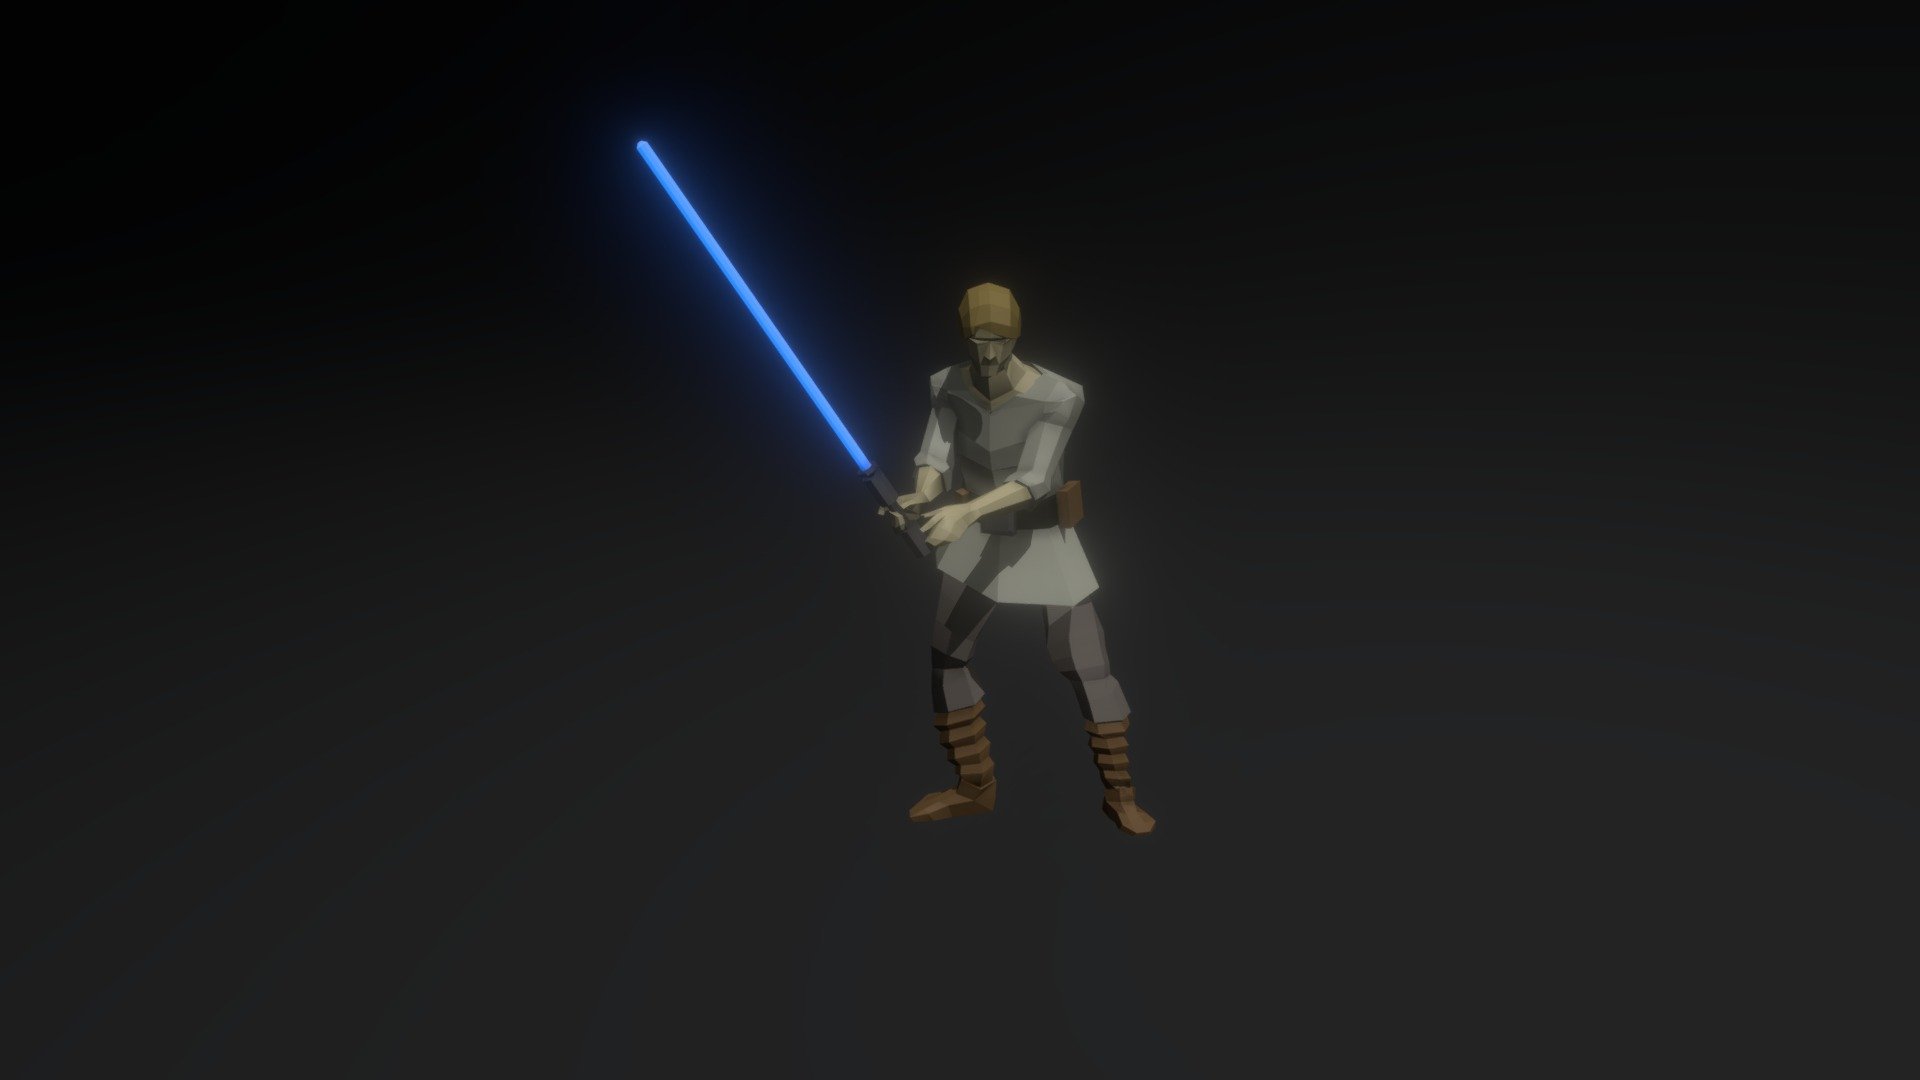 Low poly free model, rigged of Star Wars character Luke Skywalker - LowPoly Luke Skywalker - Download Free 3D model by Mister Tee (@cutts127) 3d model